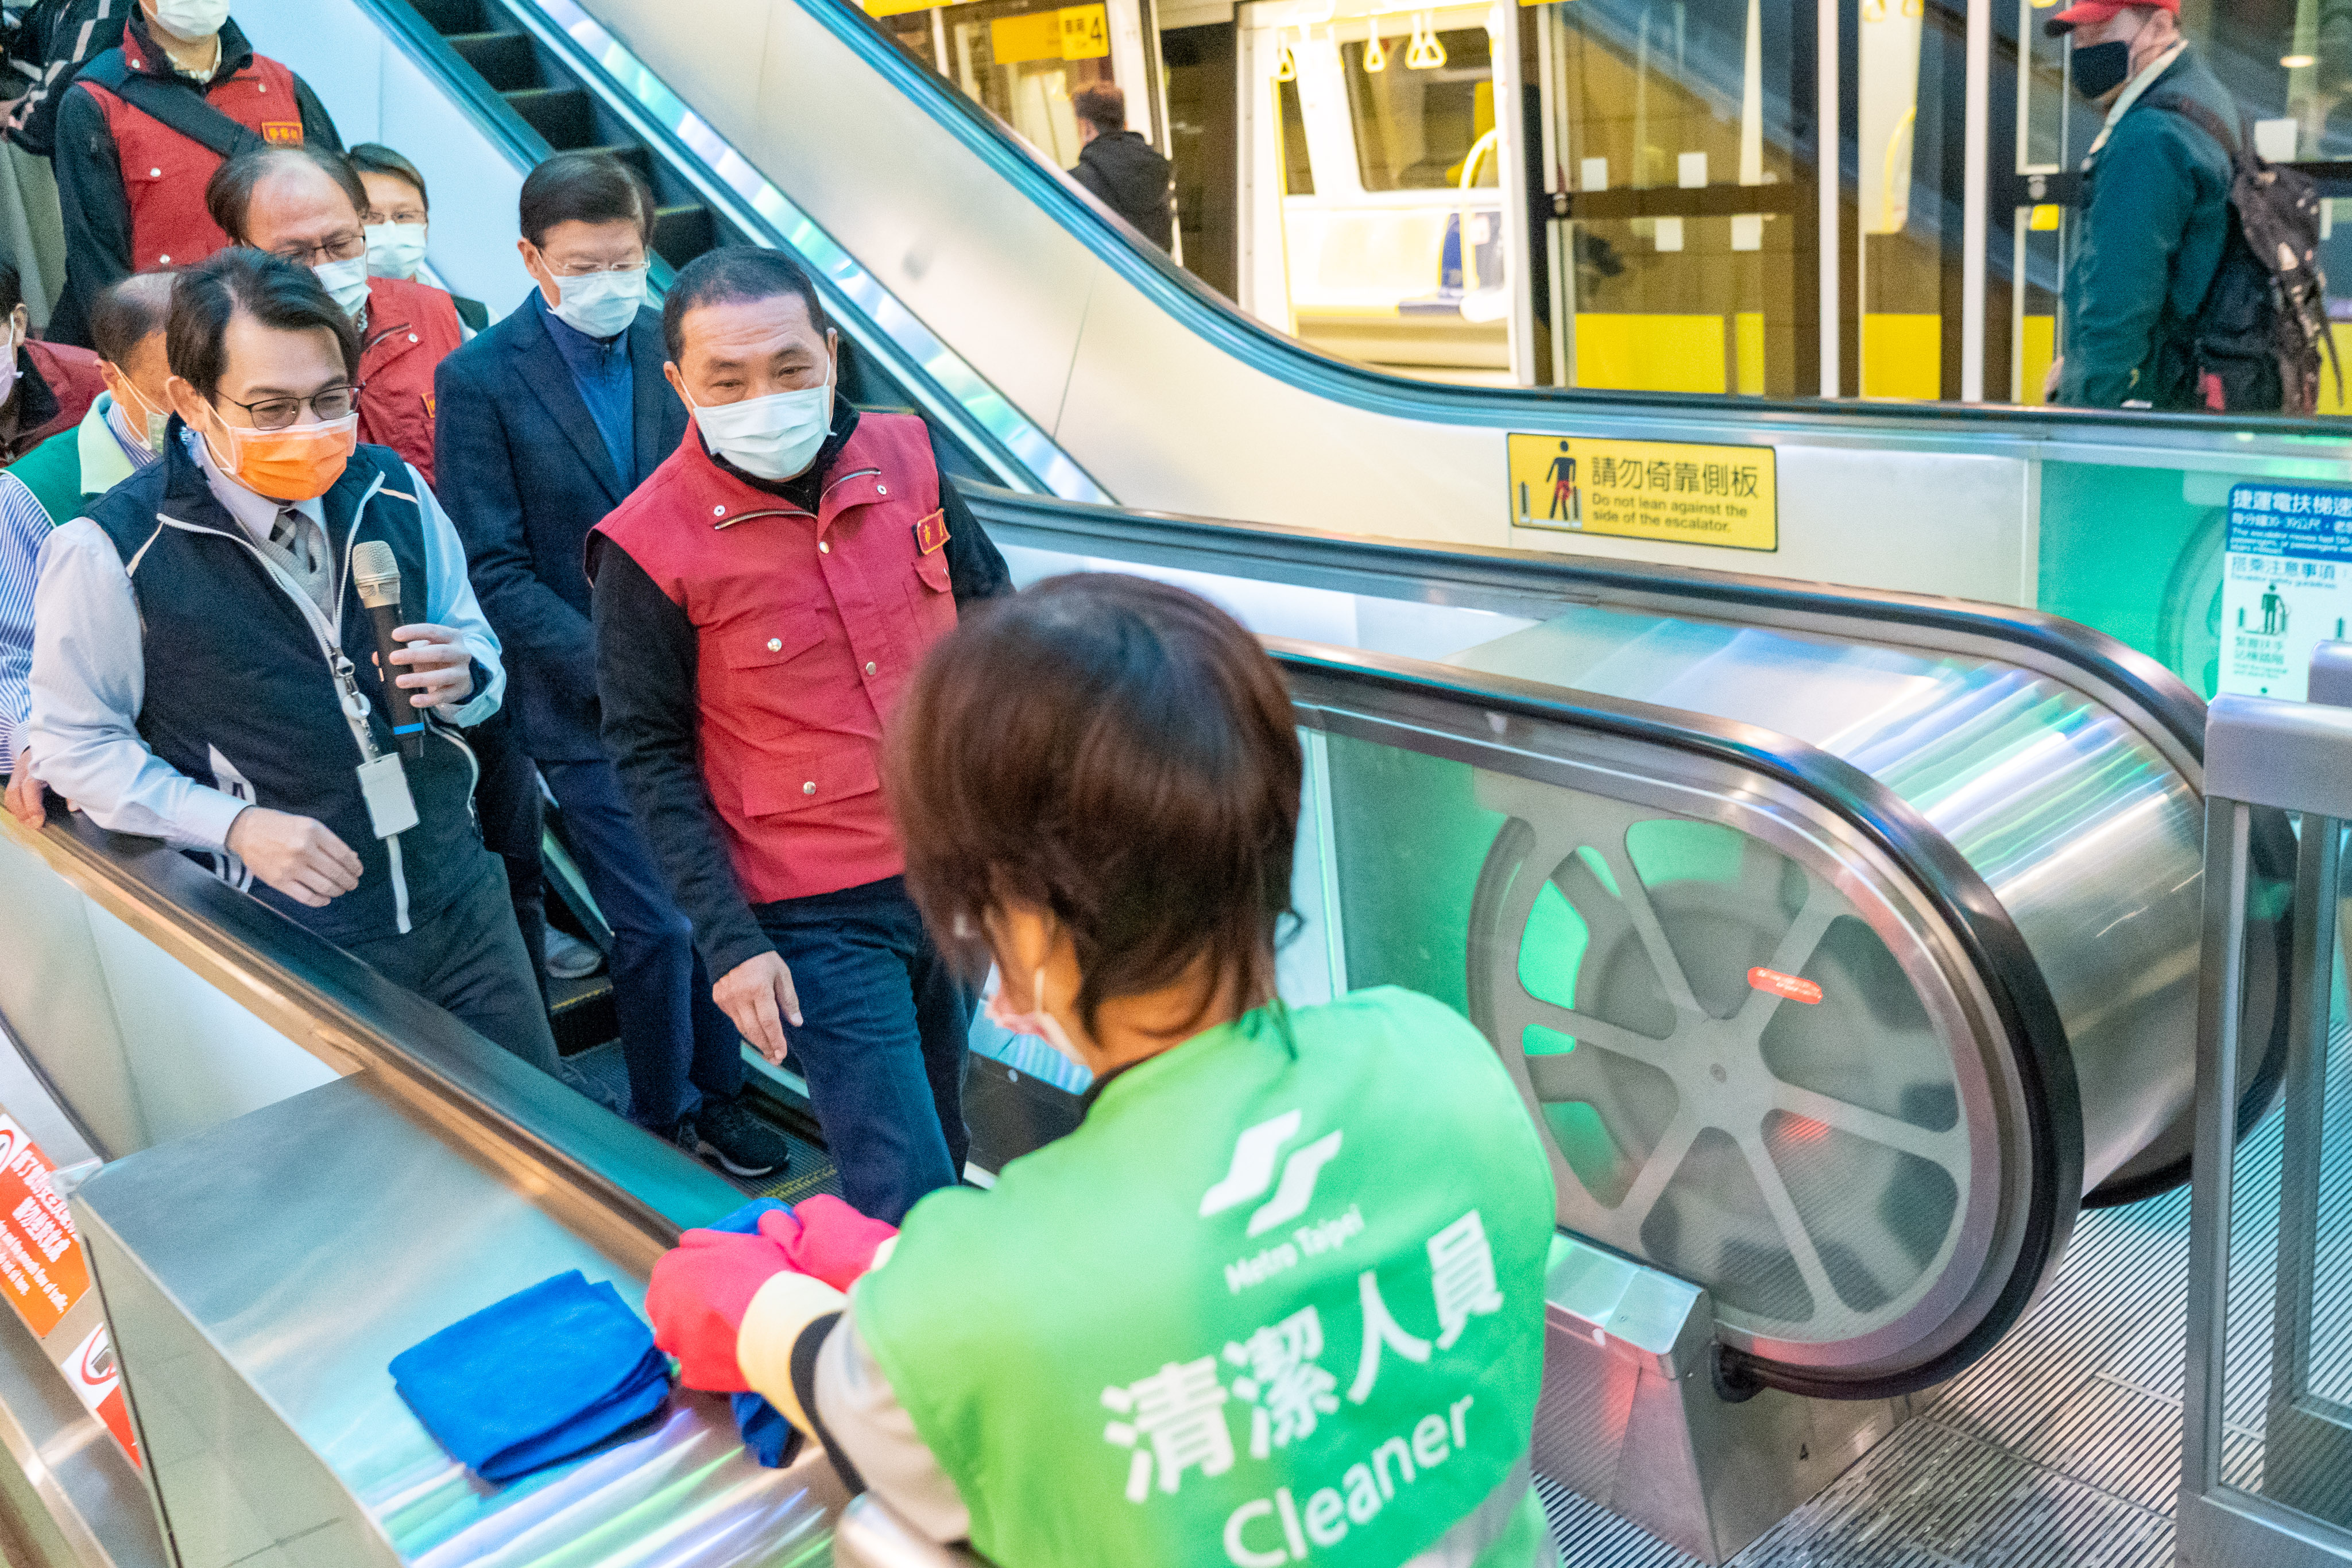 新北捷運特別針對與旅客接觸最密切的車廂、電扶梯、加值機、驗票閘門及廁所加強清消。